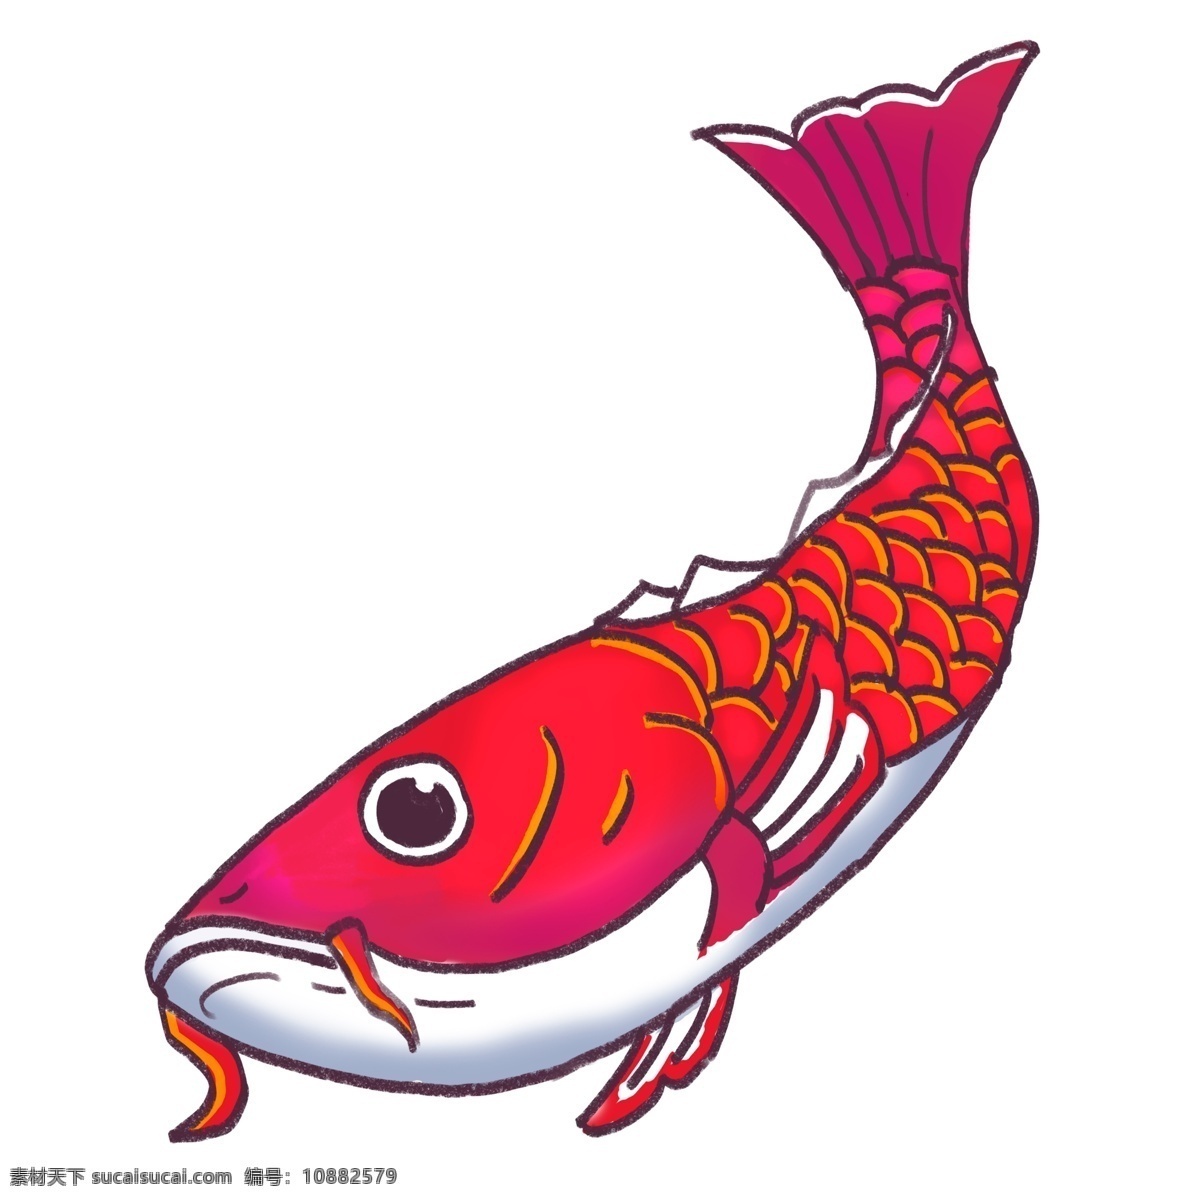 中国 风 转运 锦鲤 红色 动物 插画 中国风 手绘 红鲤鱼 鱼 转运锦鲤 鲤鱼元素